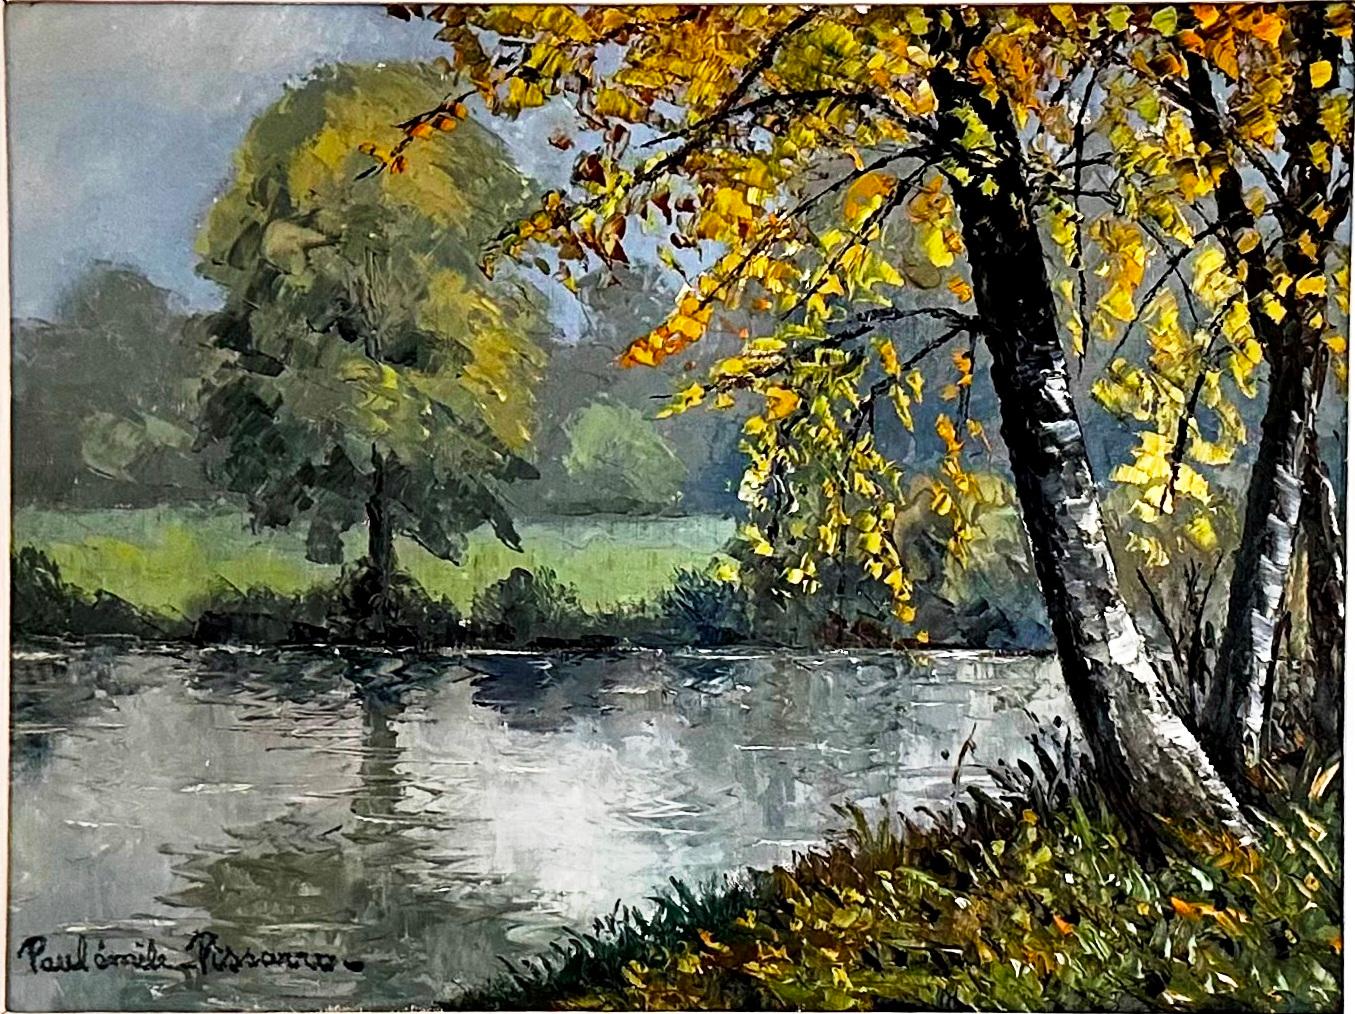  Novembre am Ufer des Wassers  – Painting von Paul Emile Pissarro